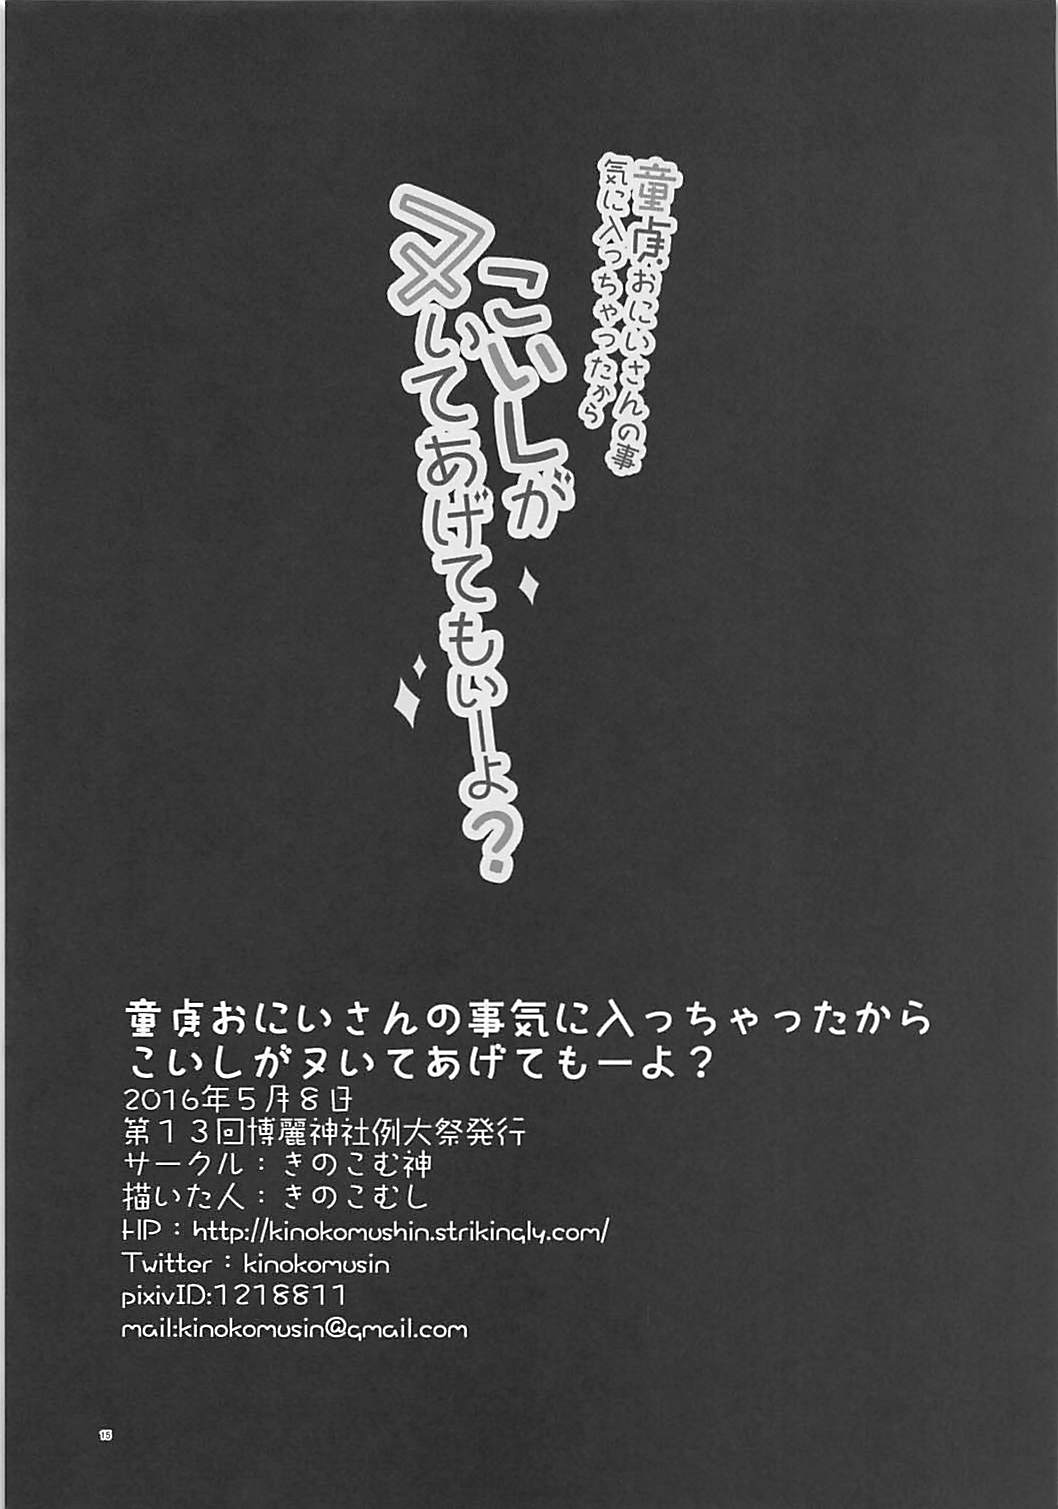 (例大祭15) [きのこむ神 (きのこむし)] KINOKOS TOUHOU BOX (東方Project)